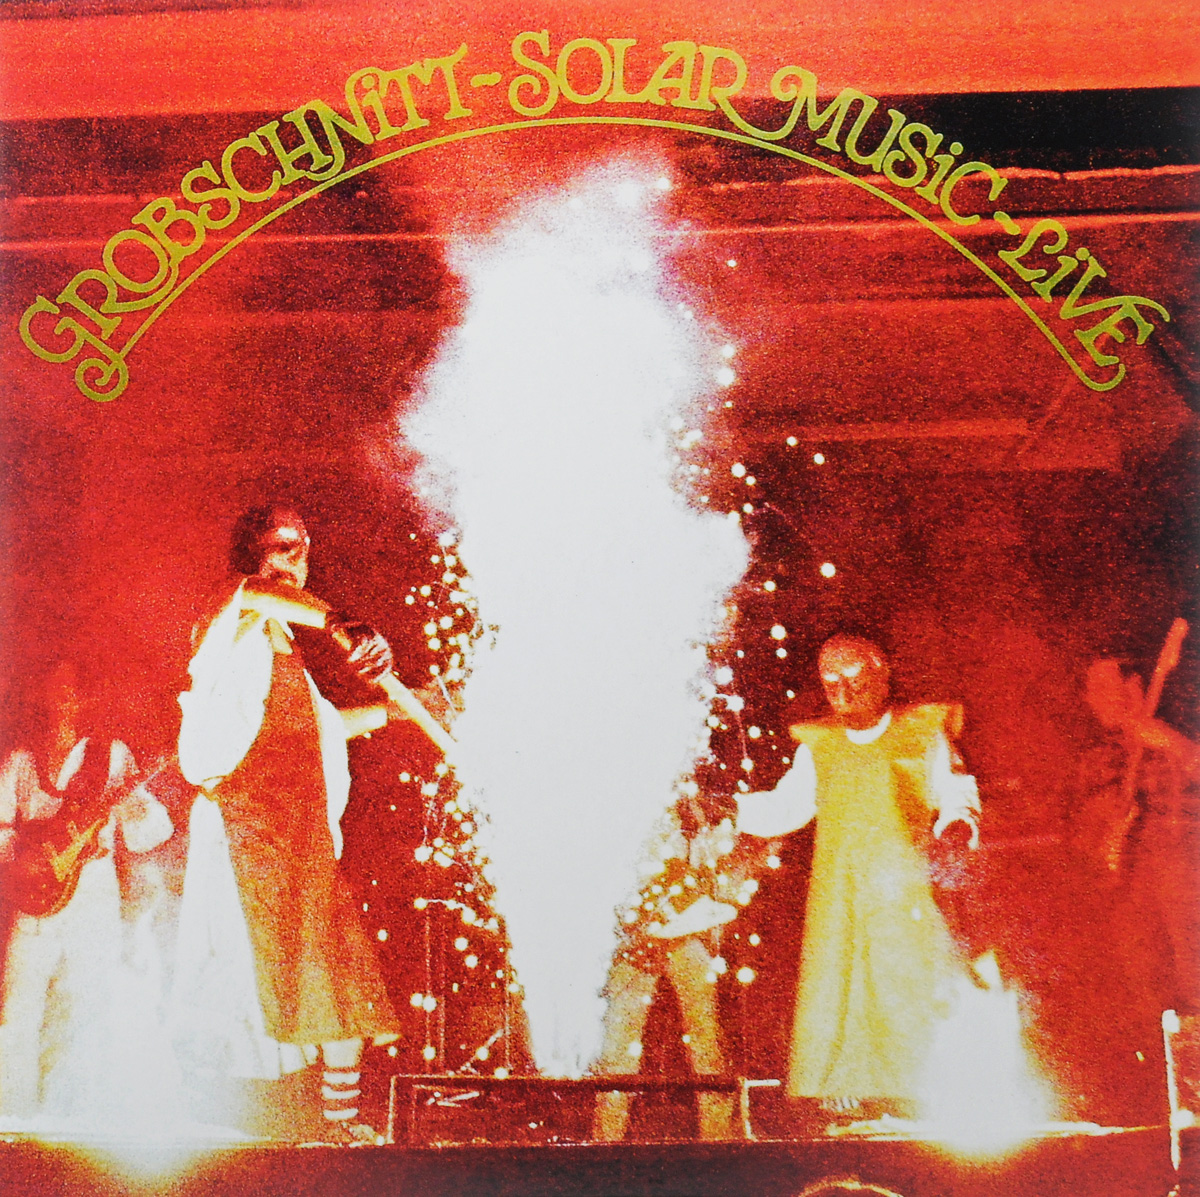 Grobschnitt Solar Music - Live (LP)